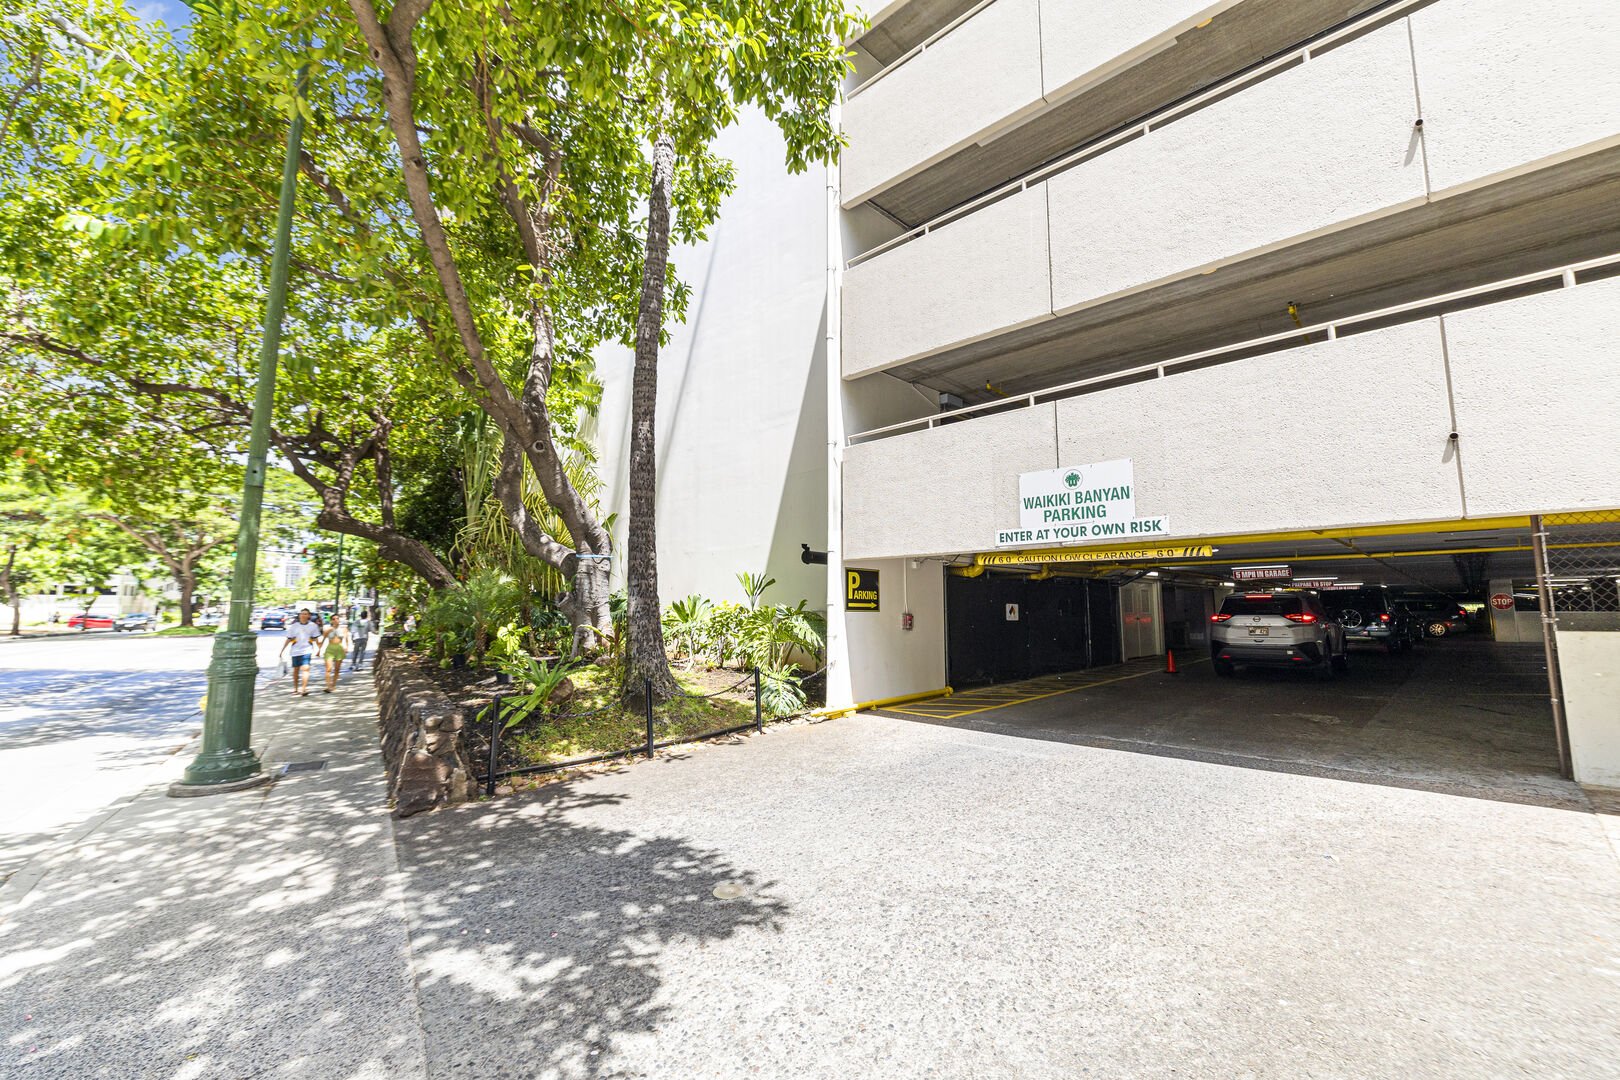 Waikiki Banyan Parking entrance from Kuhio Street.